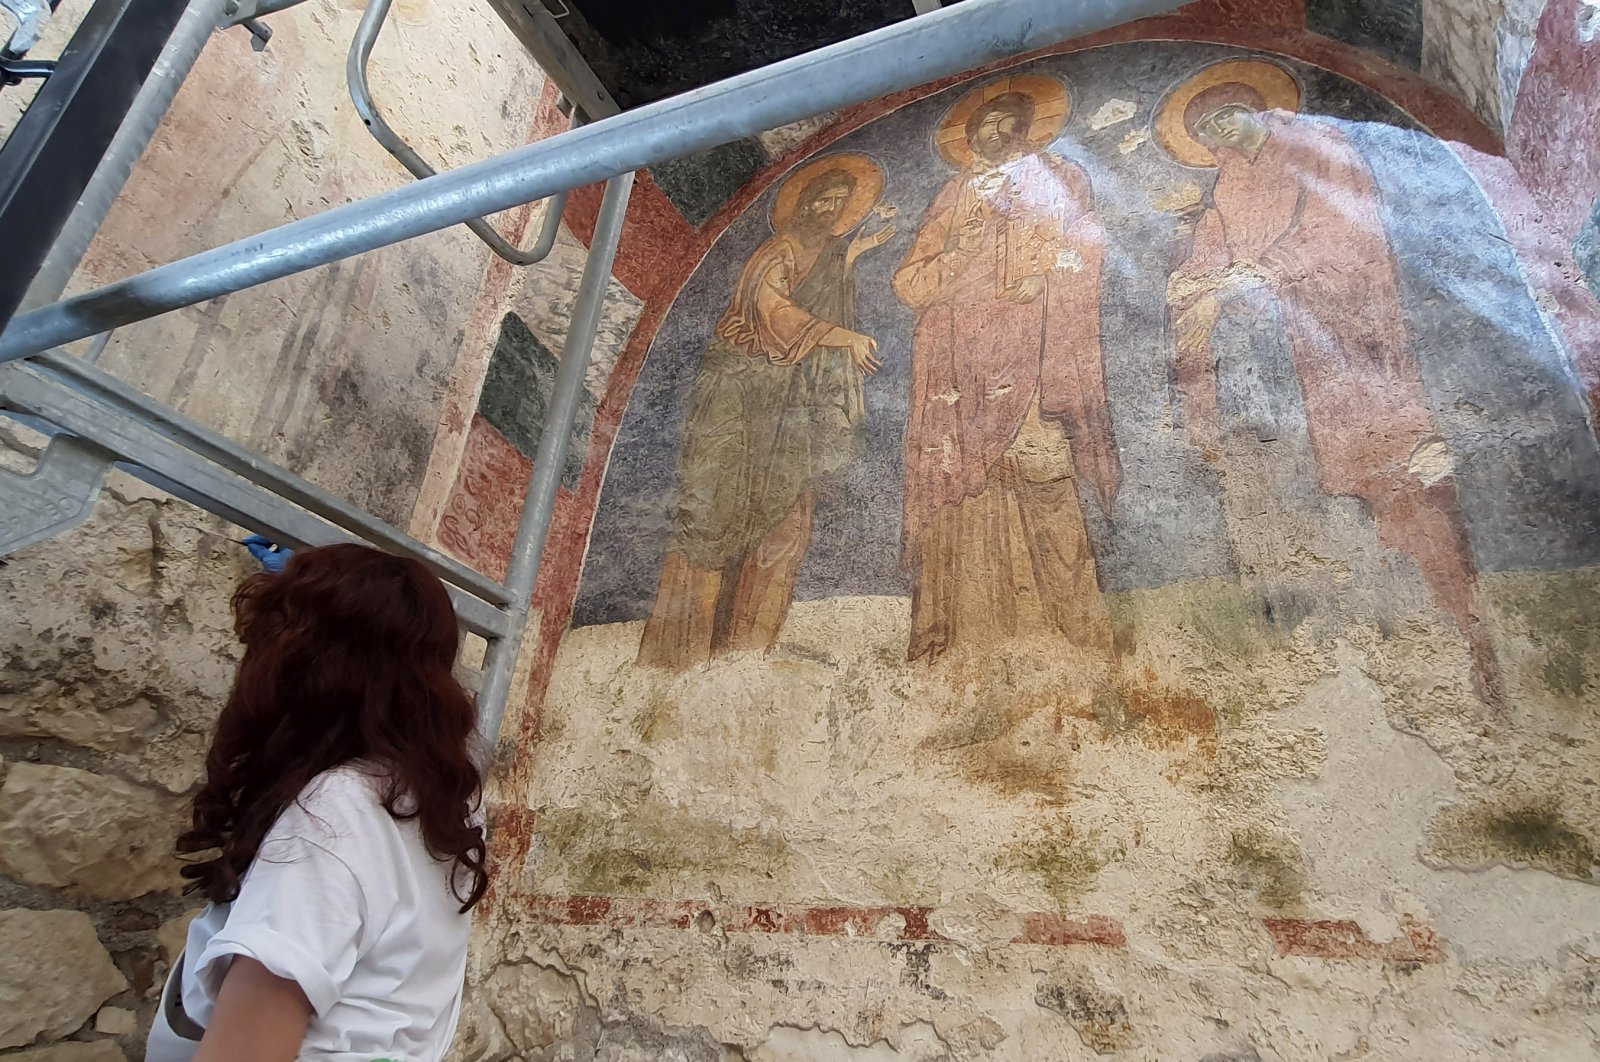 Tempat makam St. Nicholas yang sebenarnya ditemukan dengan lukisan Yesus